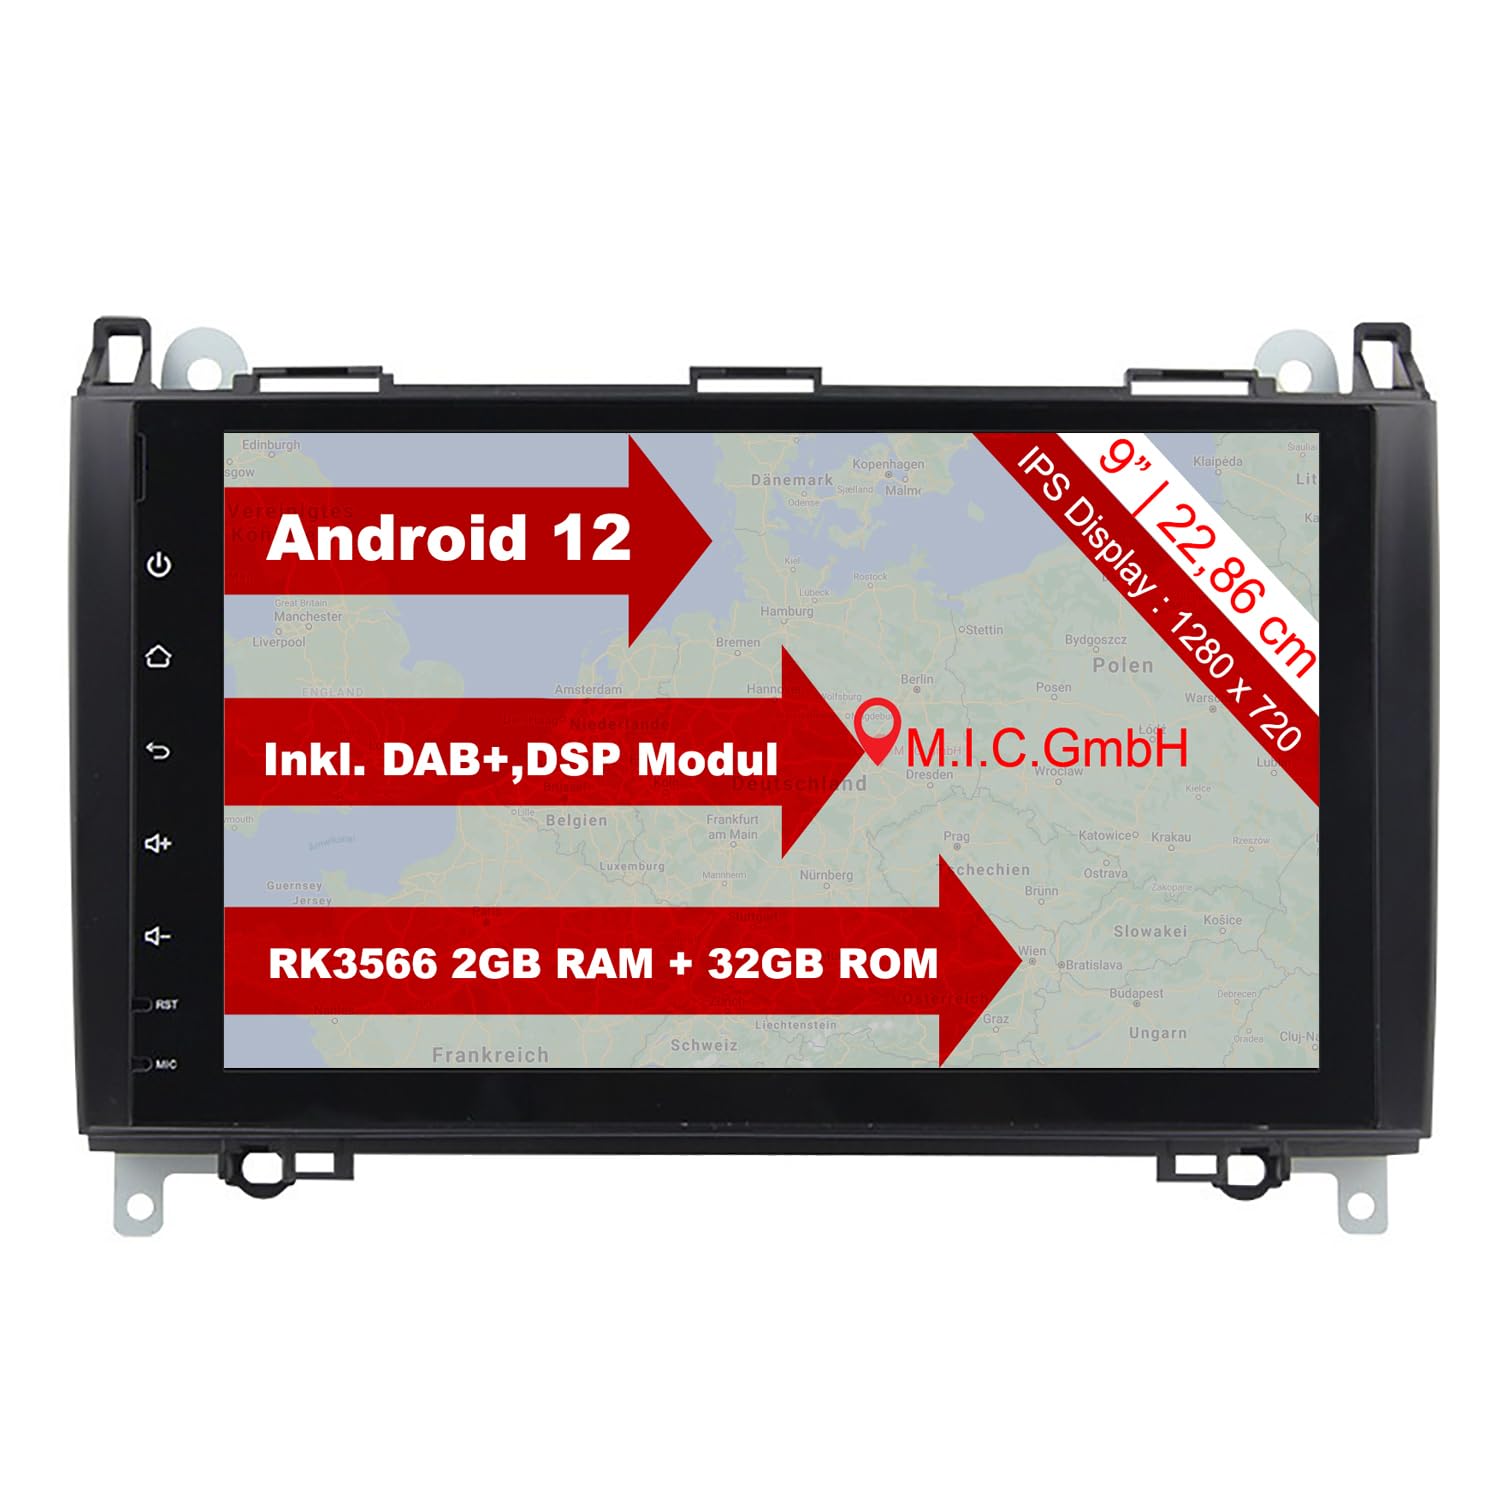 M.I.C. AB9LITE Android 12 Autoradio mit navi RK3566 2G+32G Ersatz für Mercedes Benz A-Klasse W169 B-Klasse W245 Viano Vito W639 Sprinter VW Crafter : DSP DAB BT 5.0 WiFi 2 din 9" IPS Bildschirm USB